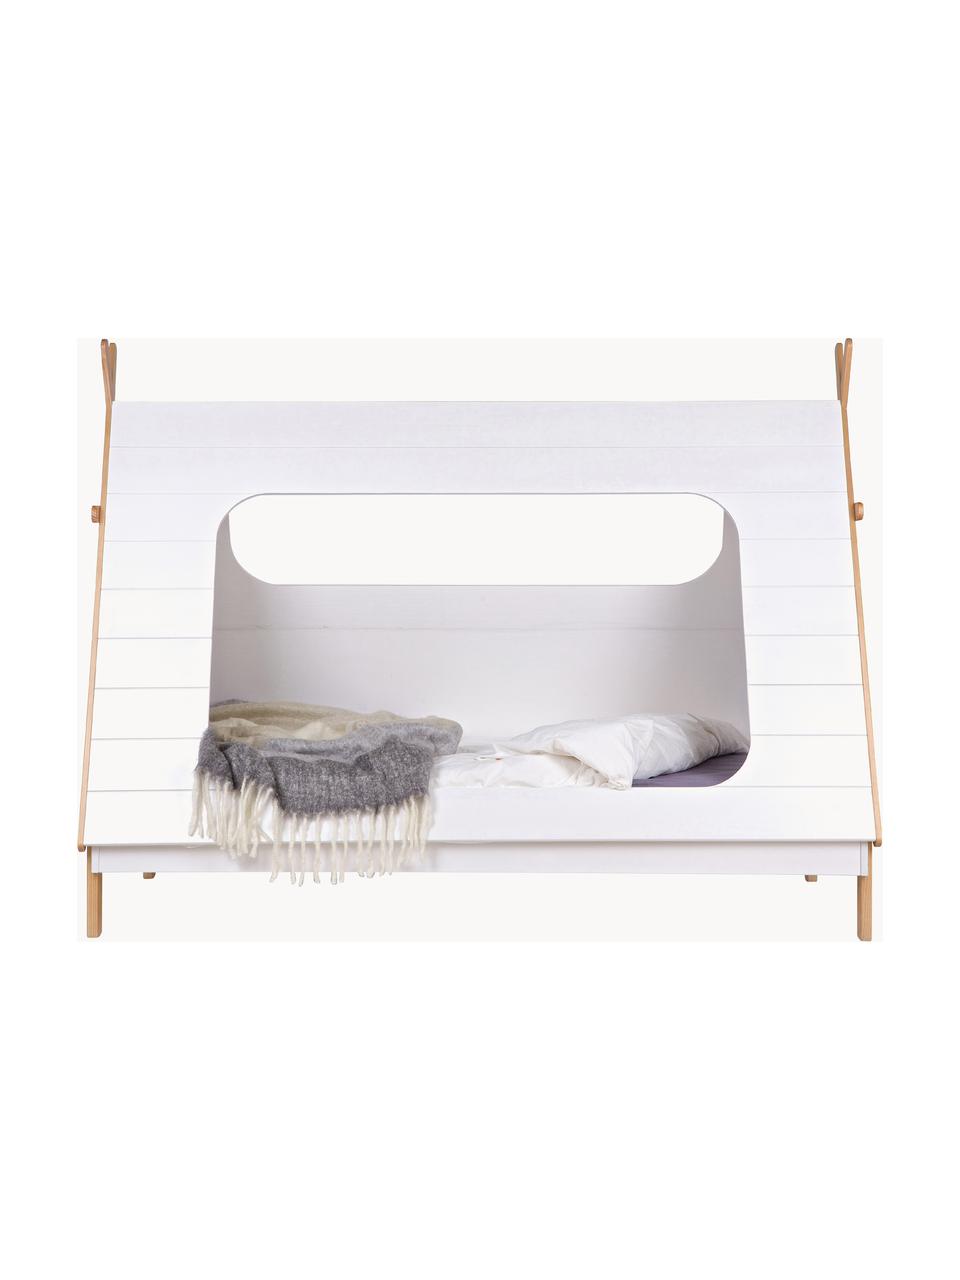 Łóżko z drewna sosnowego dla dzieci Tipi, 90 x 200 cm, Drewno sosnowe, Drewno sosnowe lakierowane na biało, S 90 x D 200 cm